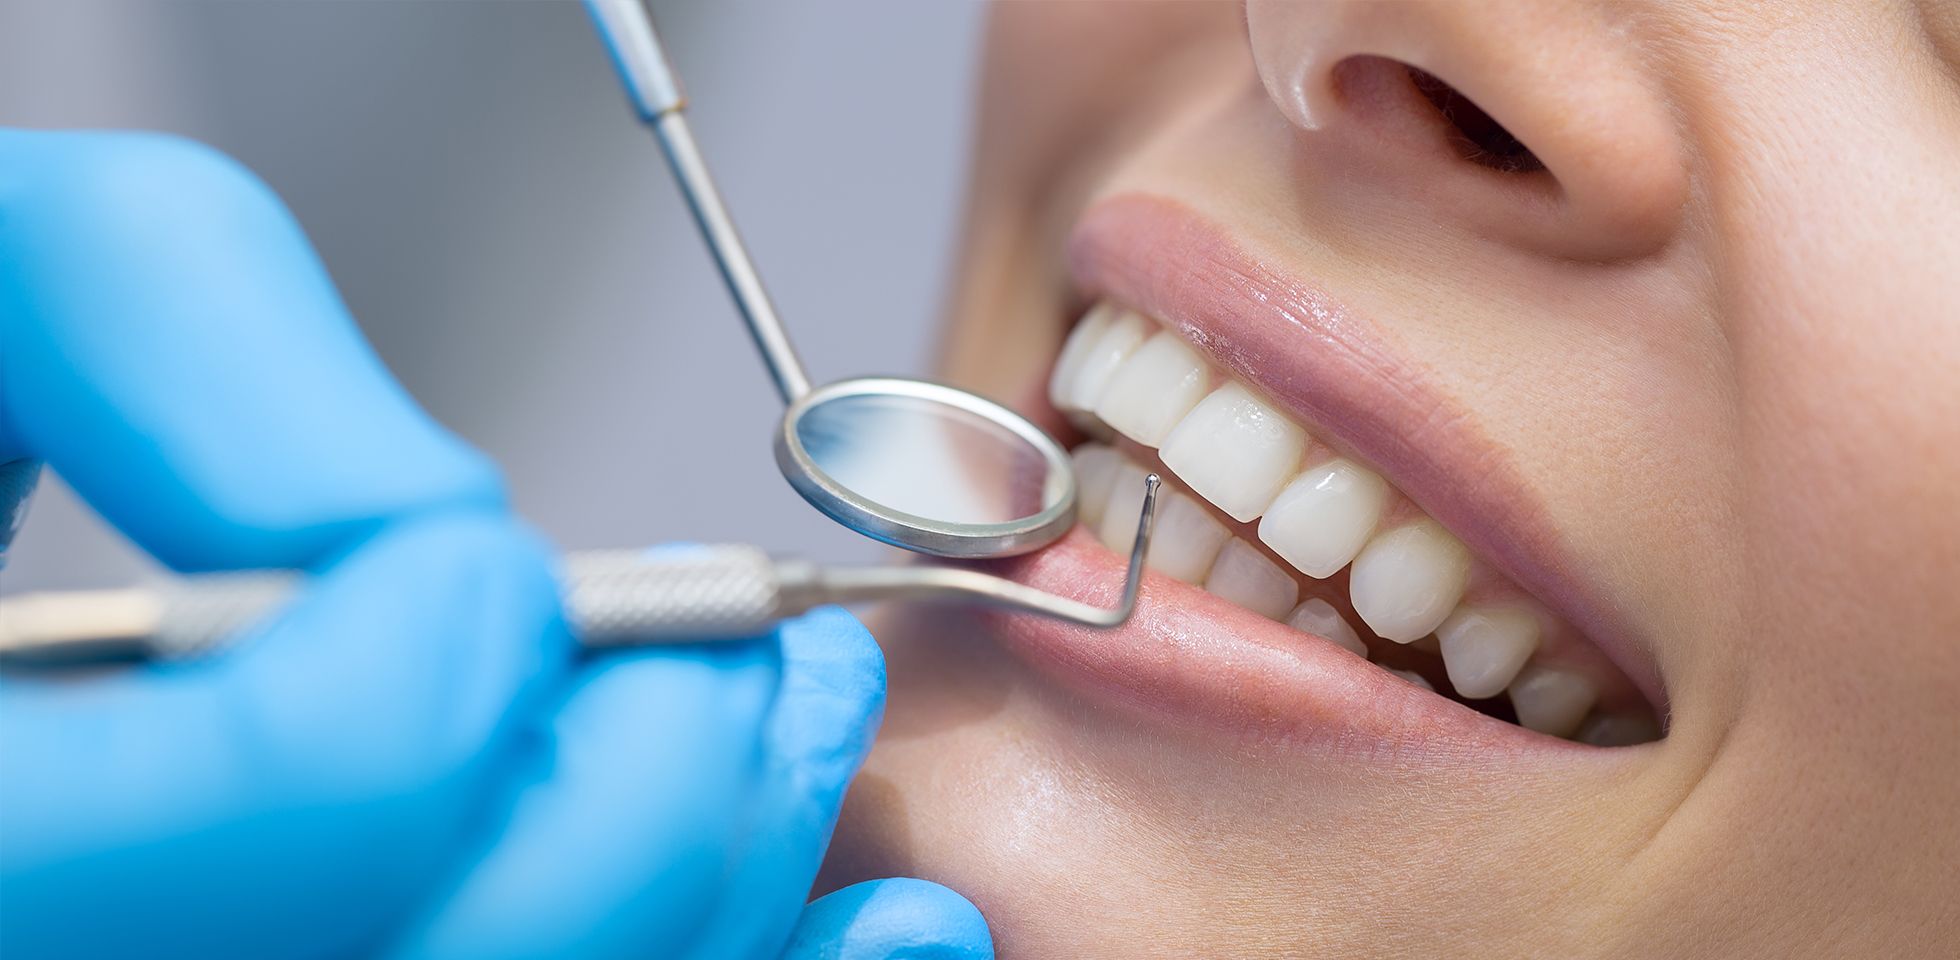 Dental teeth cleaning by a hygienist